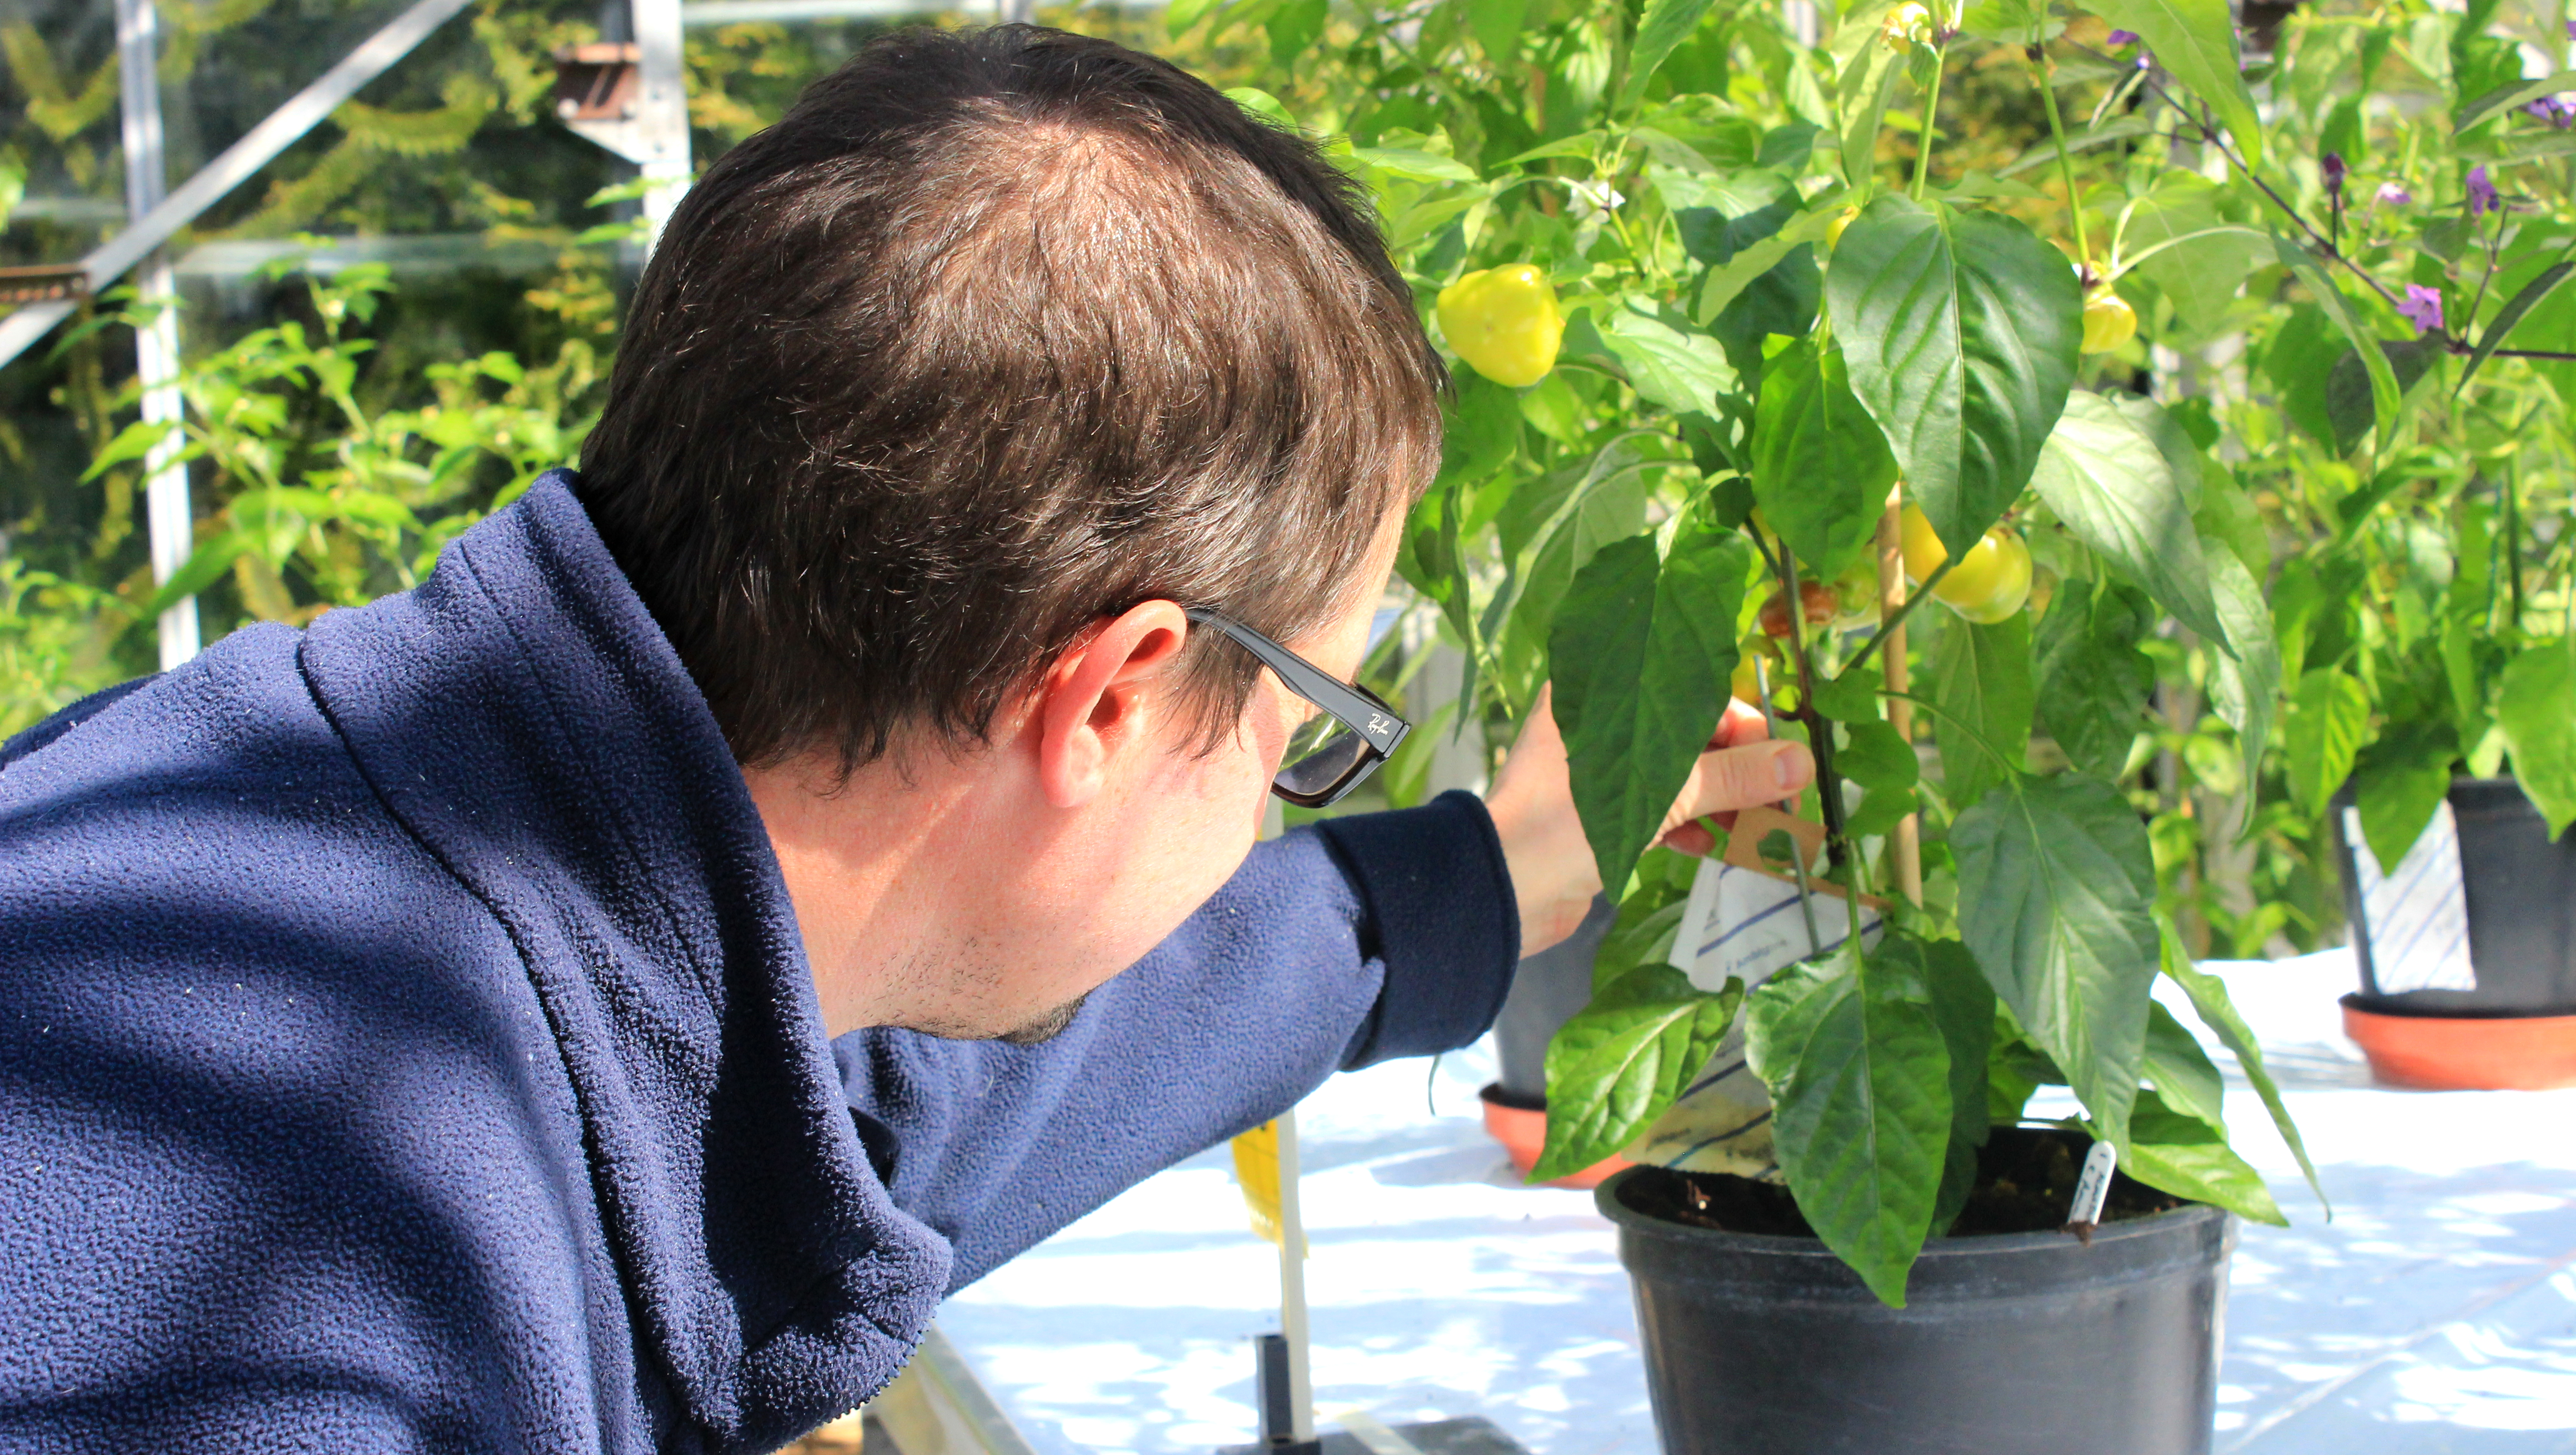 Technician tending plants in greenhouse